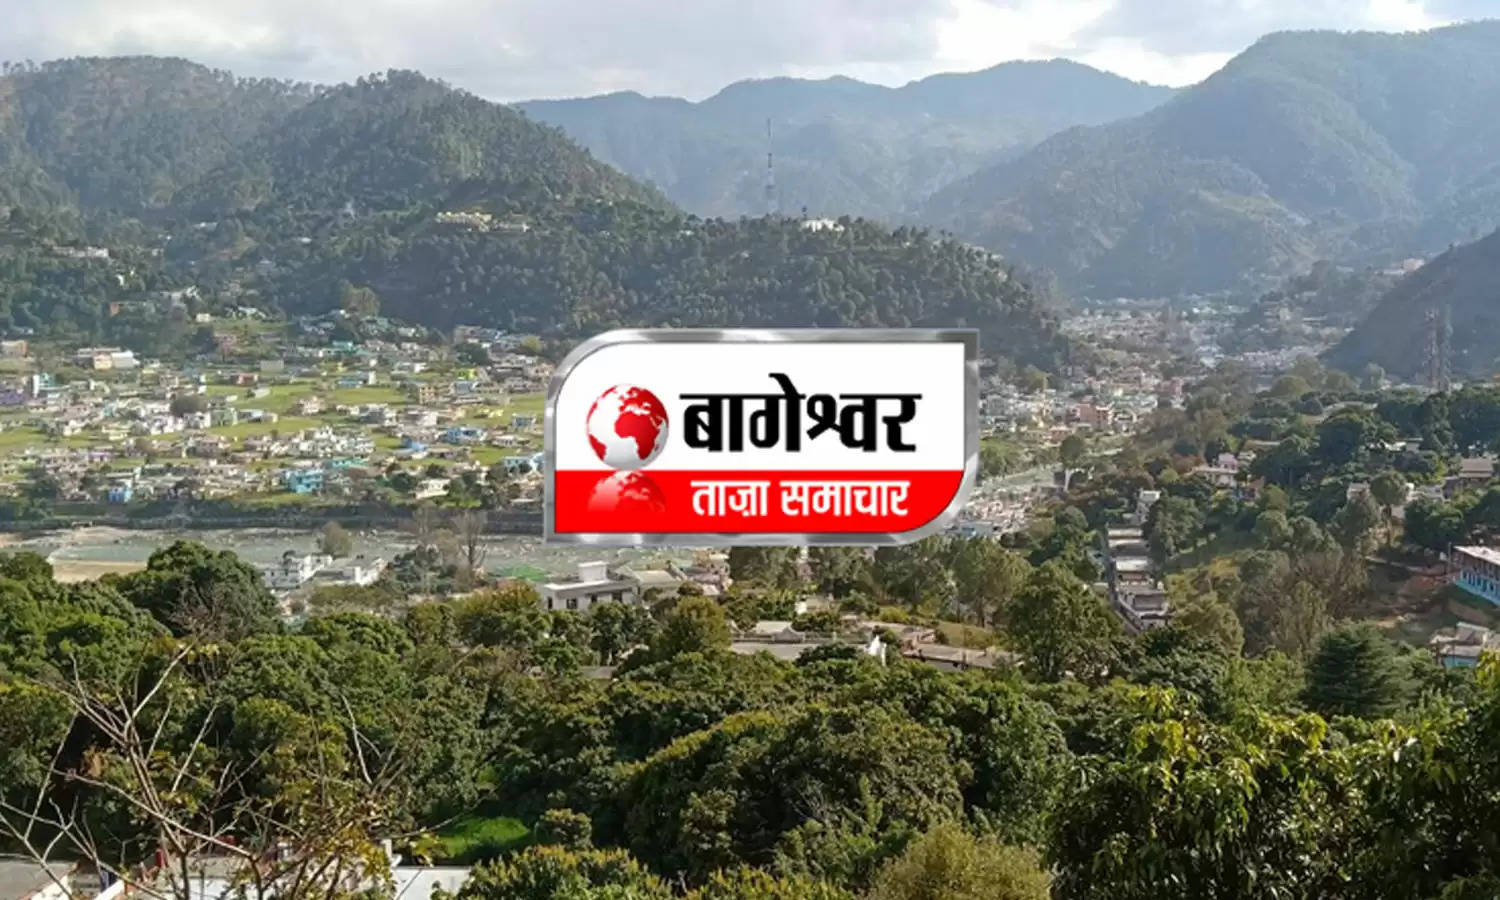 Uttarakhand News Bulletin-14 : नाराज ग्रामीणों ने किया ऊर्जा निगम के एसडीओ का घेराव, जानिए बागेश्वर की ऐसी ही तमाम छोटी बड़ी खबरें...